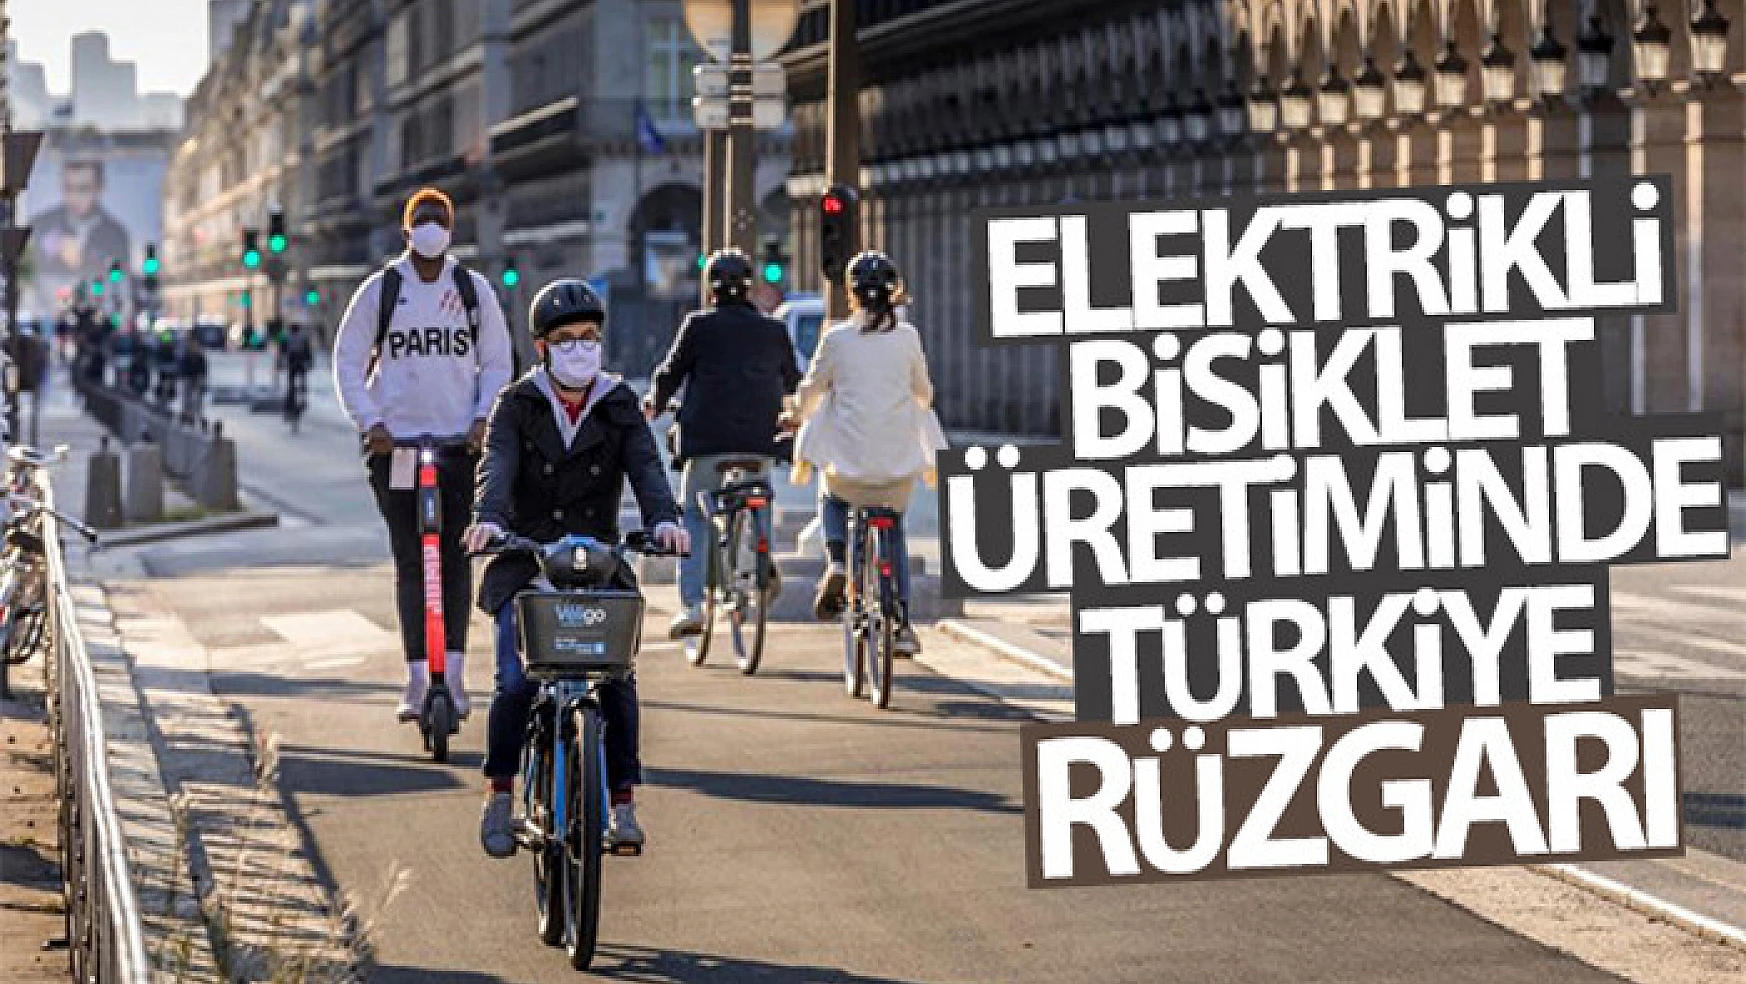 Elektrikli bisiklet üretiminde Türkiye rüzgarı